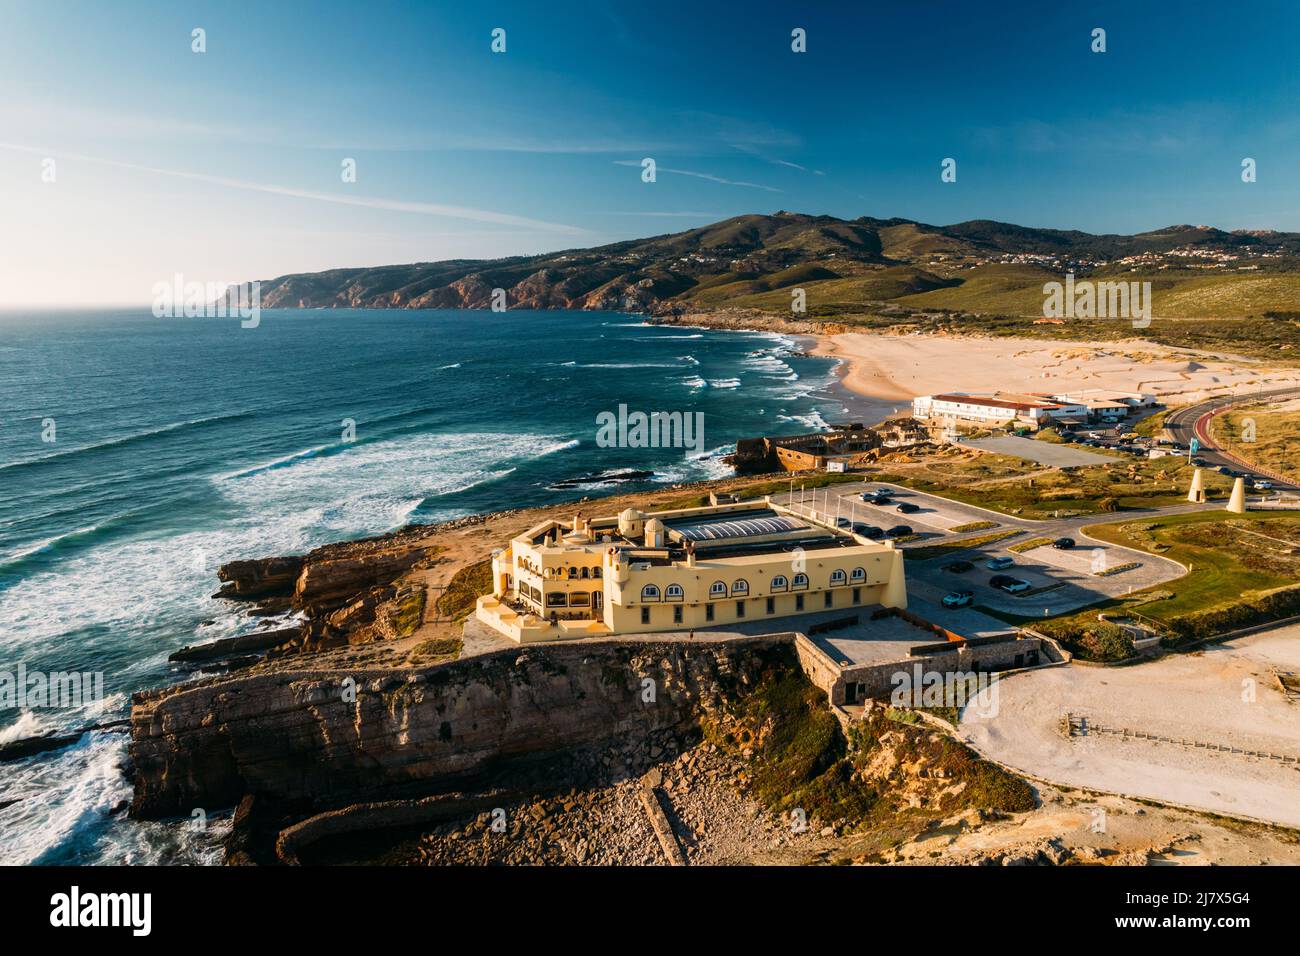 Vista aerea della costa selvaggia di fronte all'oceano Atlantico vicino a Praia do Guincho a Cascais, Lisbona, Portogallo Foto Stock